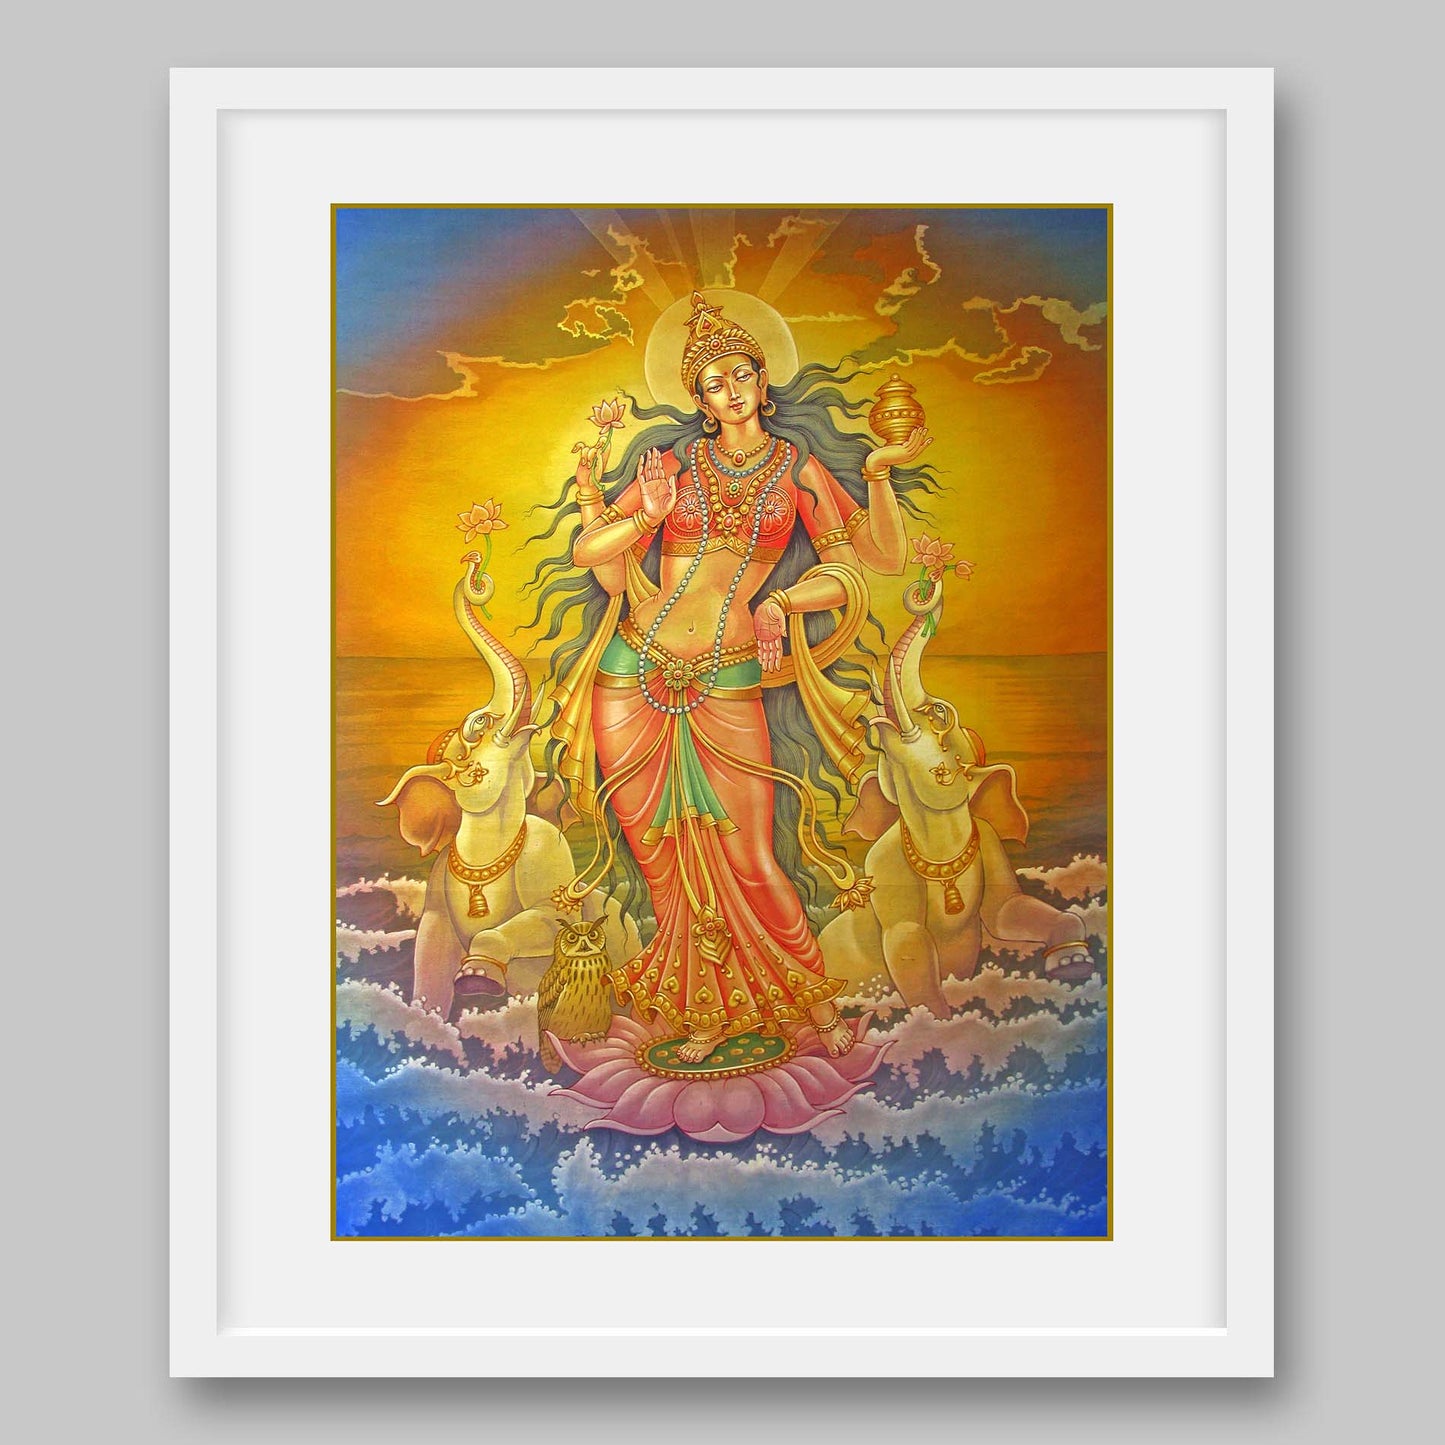 Lakshmi - High Quality Print of Artwork by Pieter WelteLakshmi - High Quality Print of Artwork by Pieter Weltevrederede